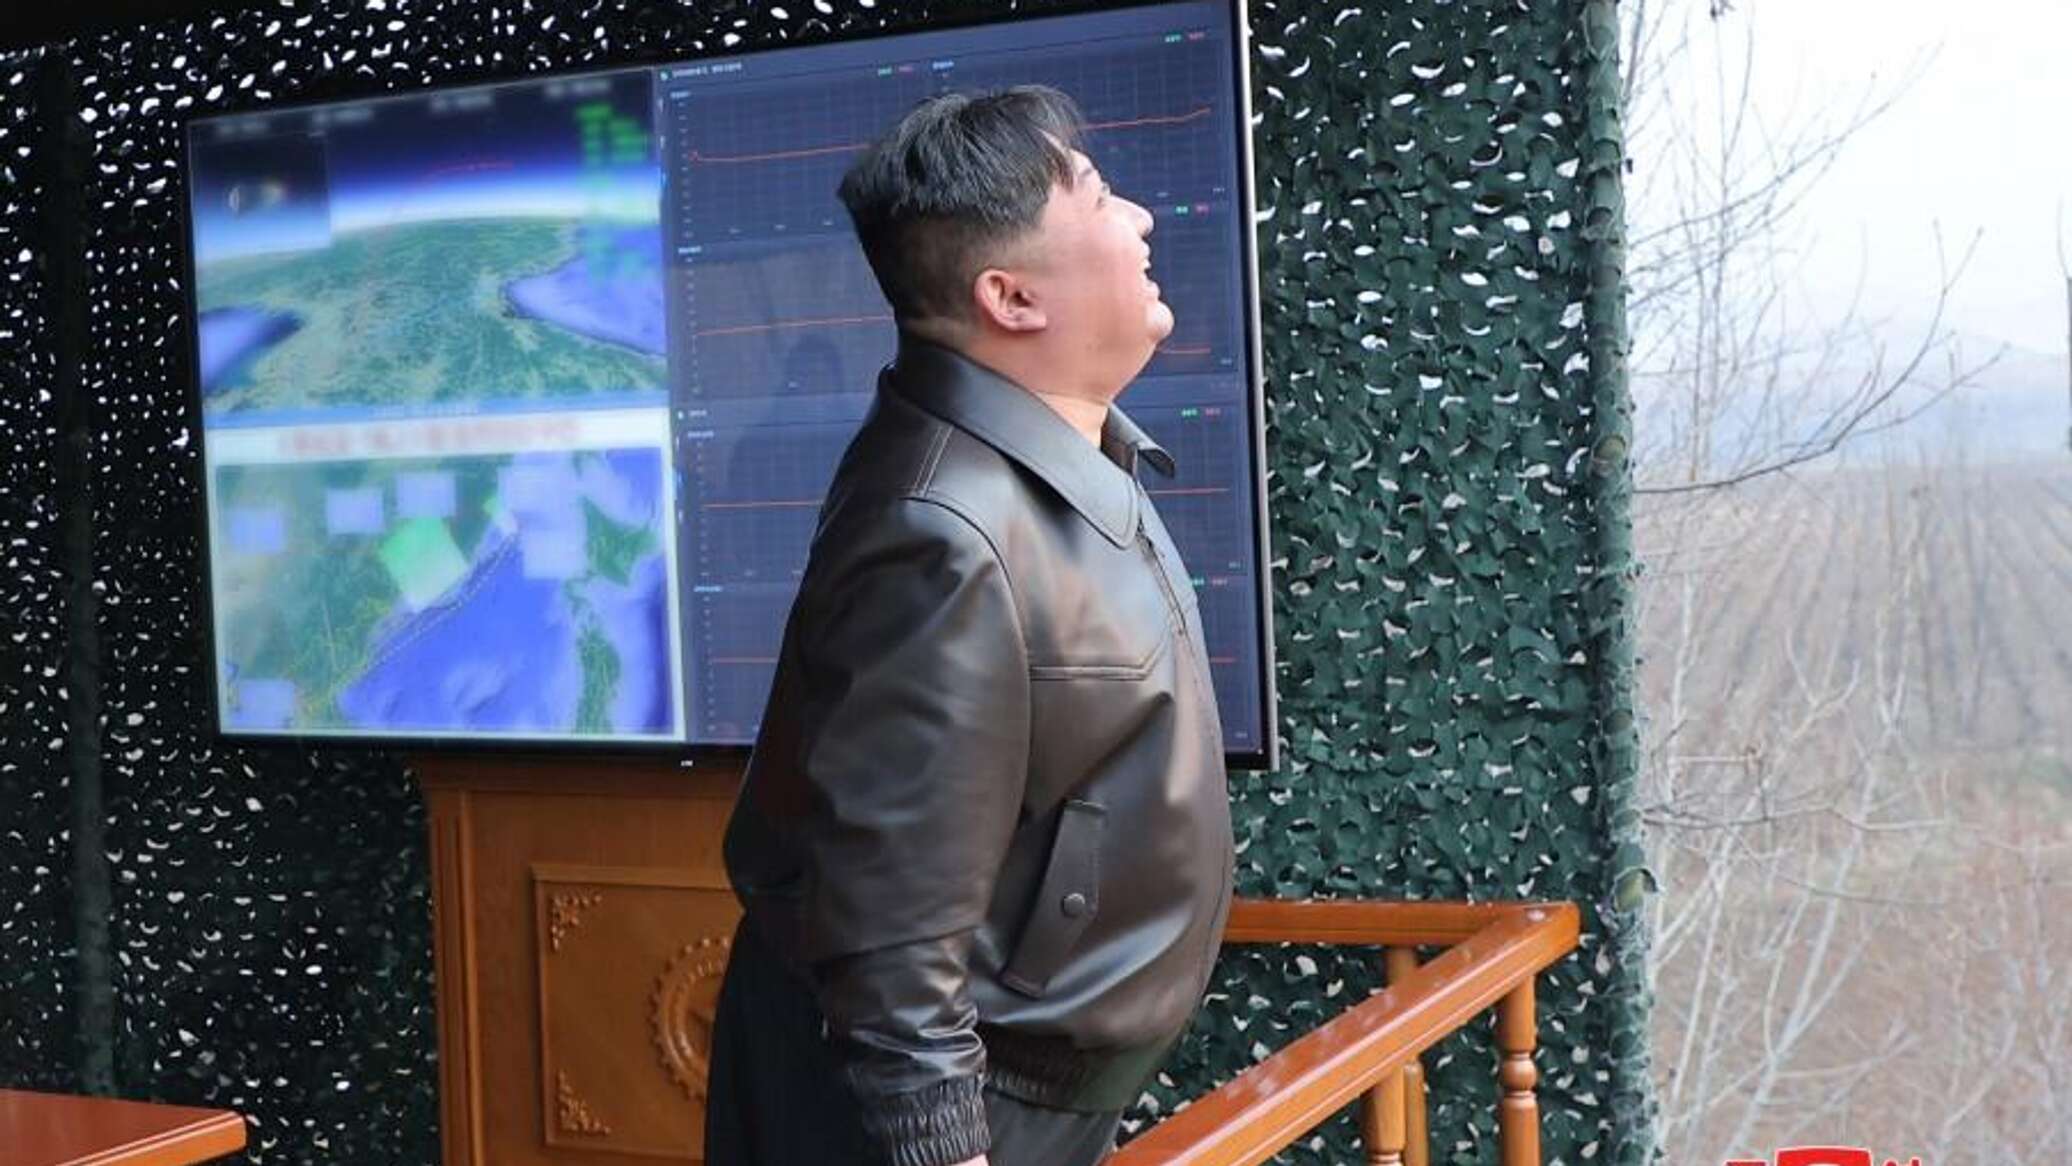 صور لإطلاق صاروخ "هواسونغ 16 بي" الفرط صوتي في كوريا الشمالية